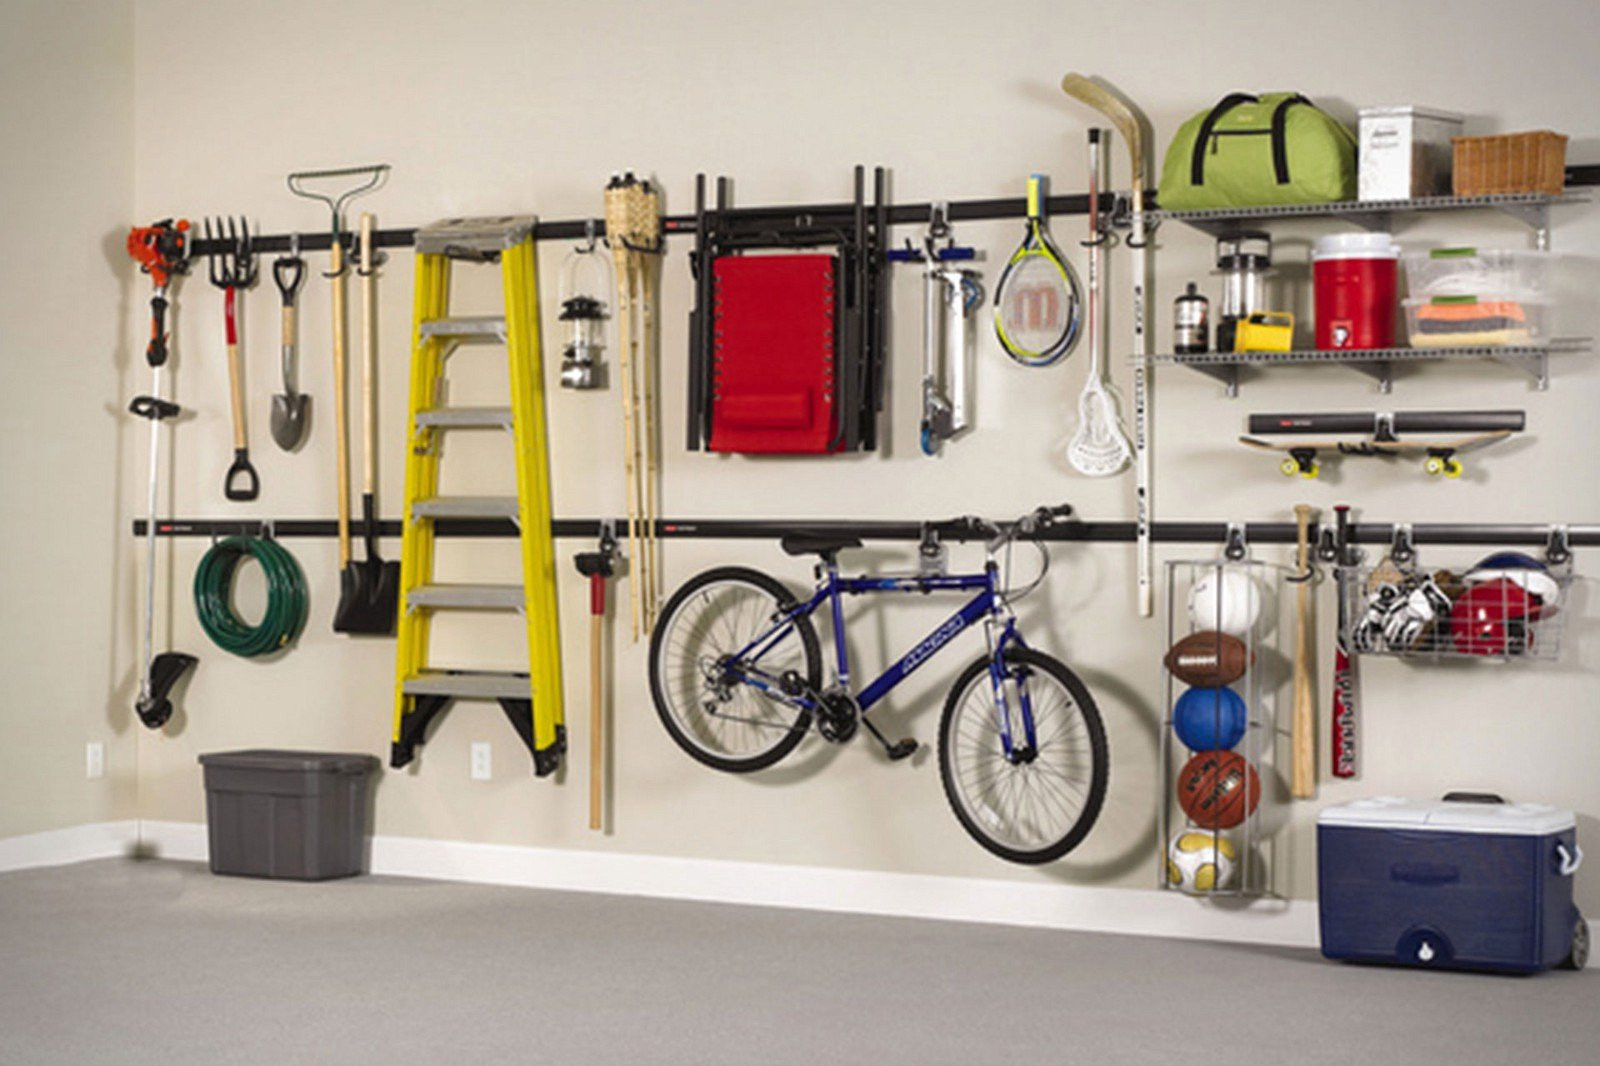 Best ideas about Garage Storage Organizers
. Save or Pin 7 Great Garage Storage Ideas Now.